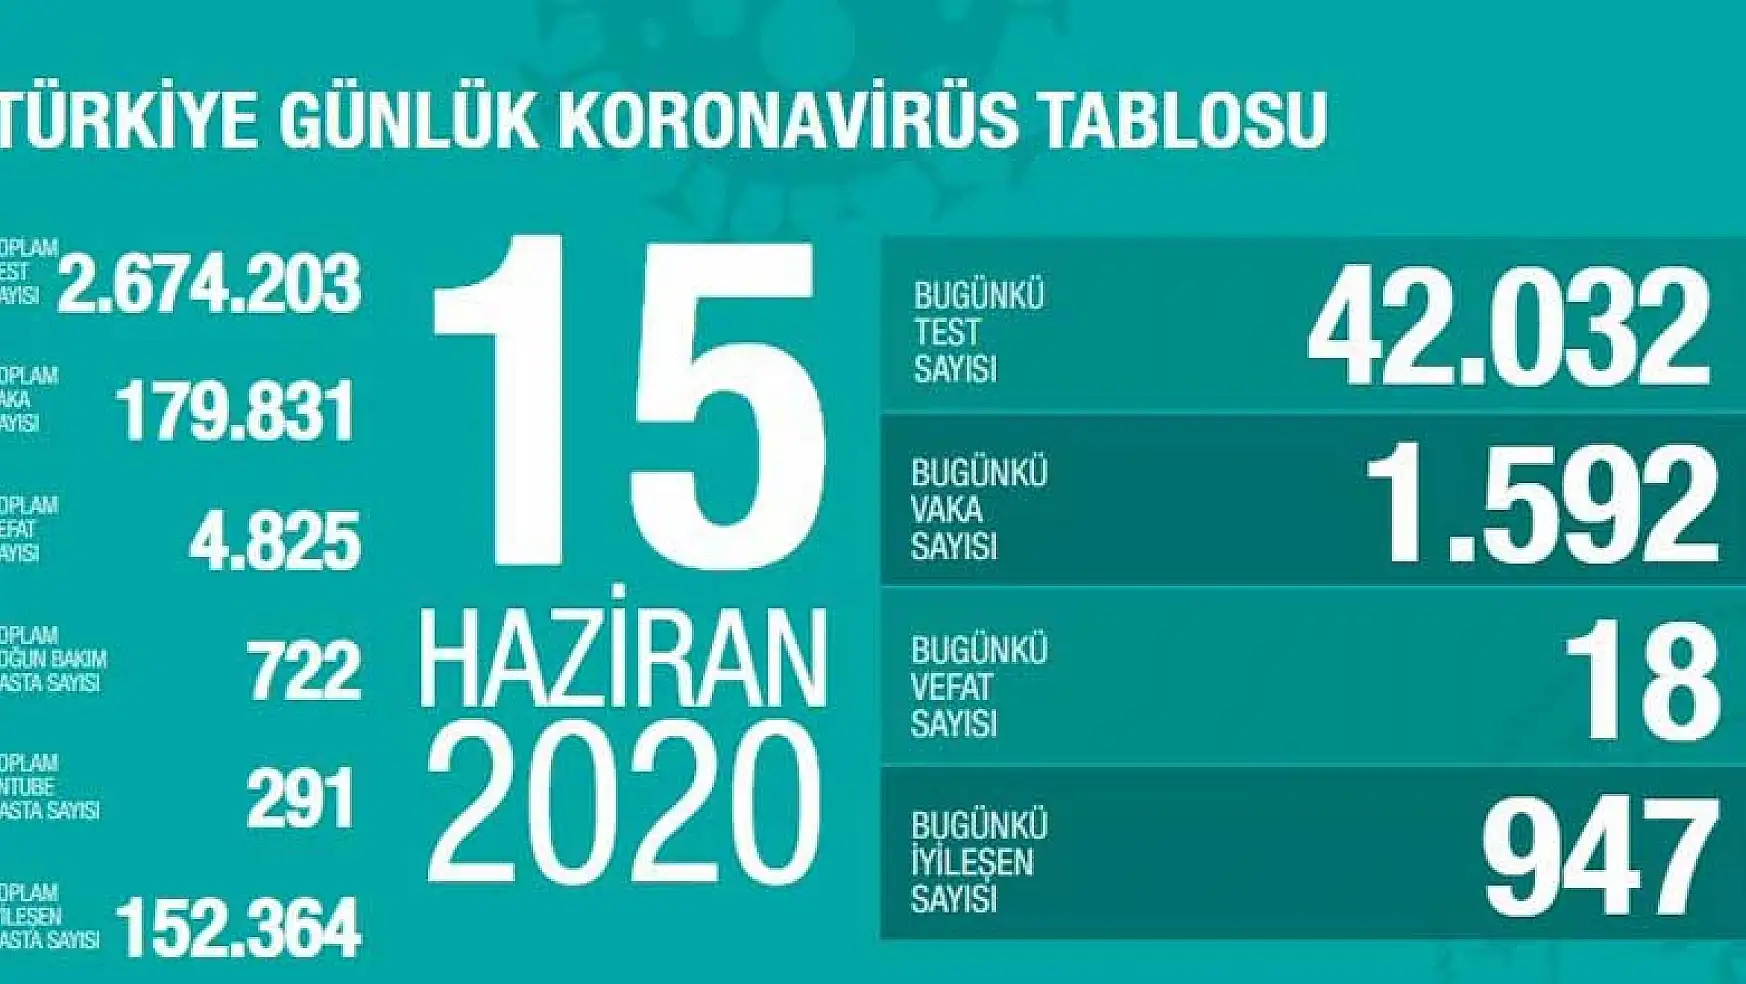 Türkiye'nin 15 Haziran tarihli son koronavirüs tablosu açıklandı